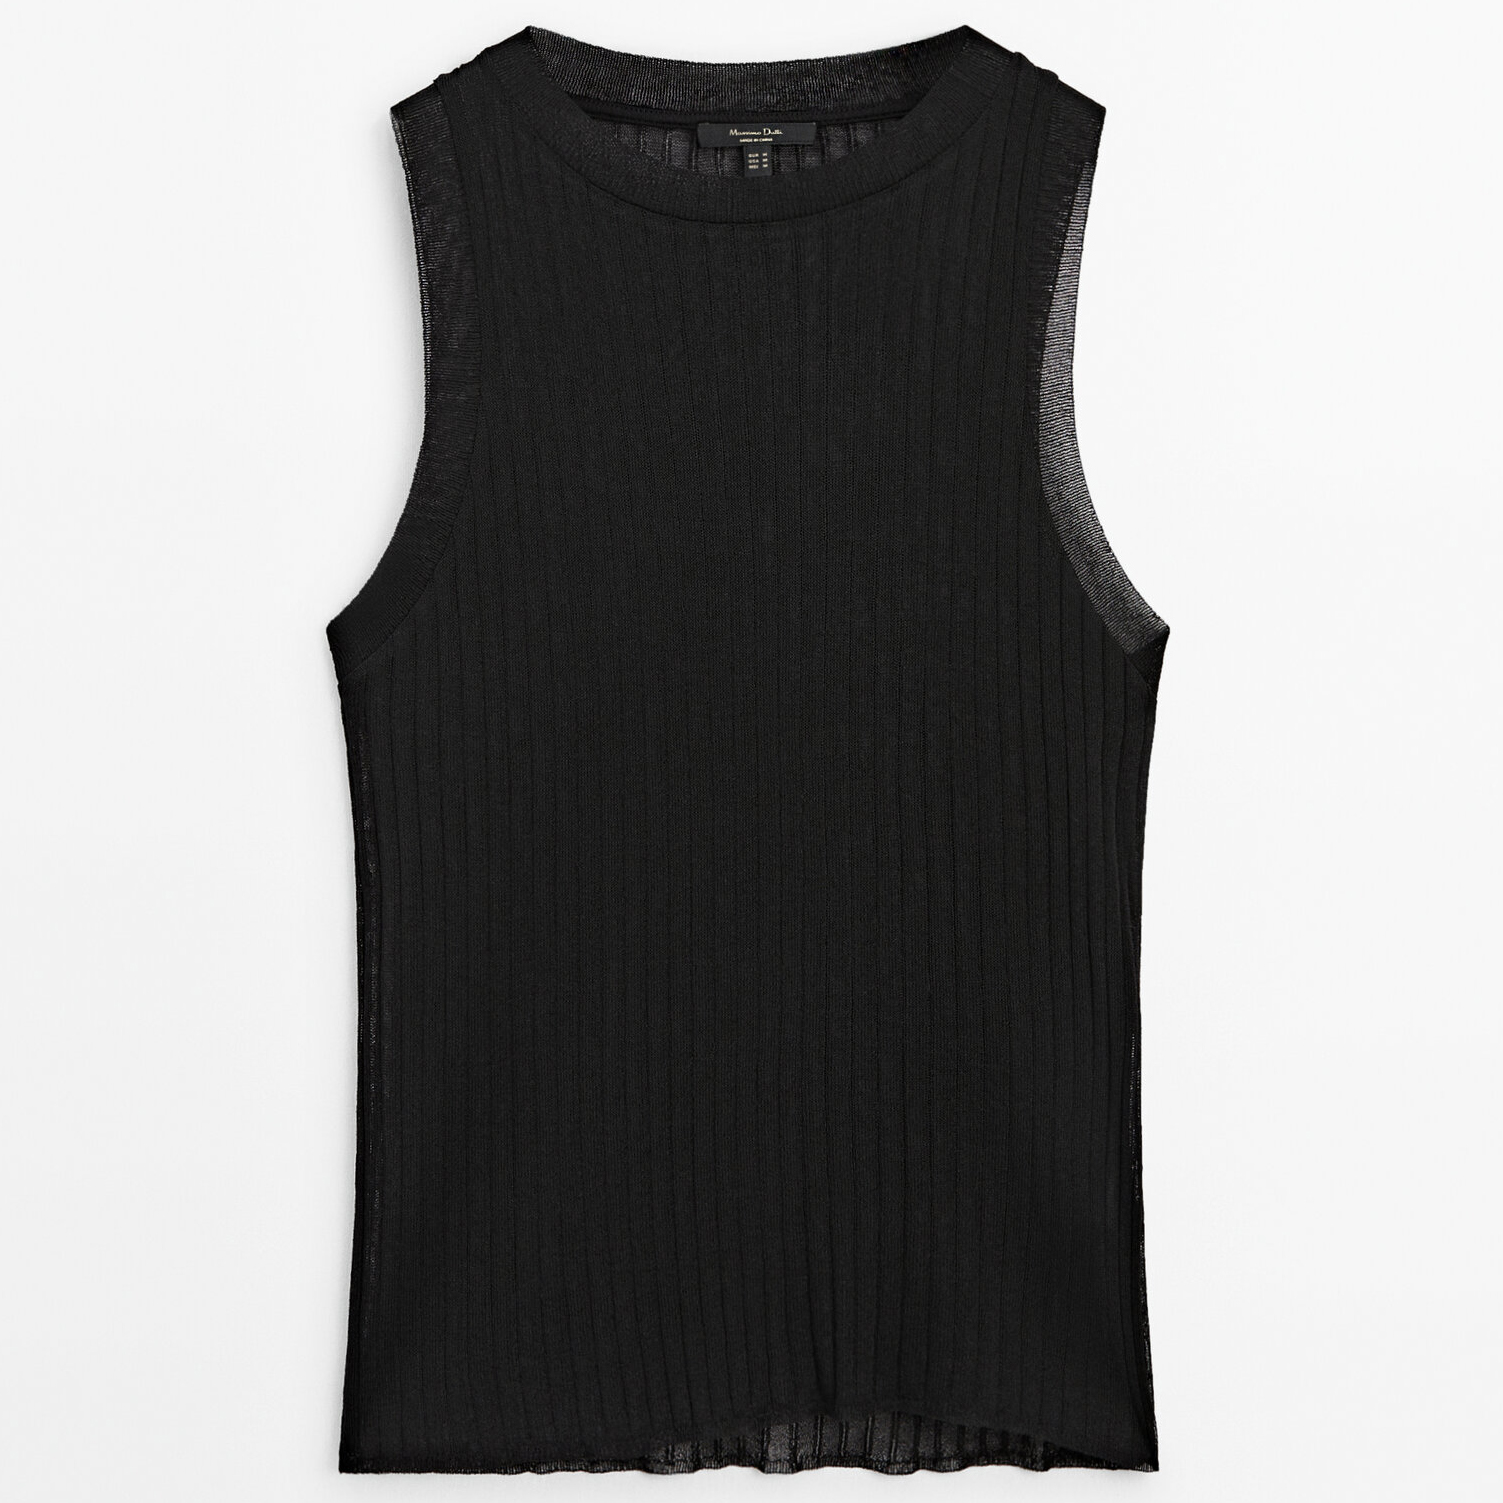 Топ Massimo Dutti Sleeveless Open-knit, черный женский шифоновый топ без рукавов однотонный пуловер с круглым вырезом приталенный жилет офисная повседневная одежда весна лето 2022